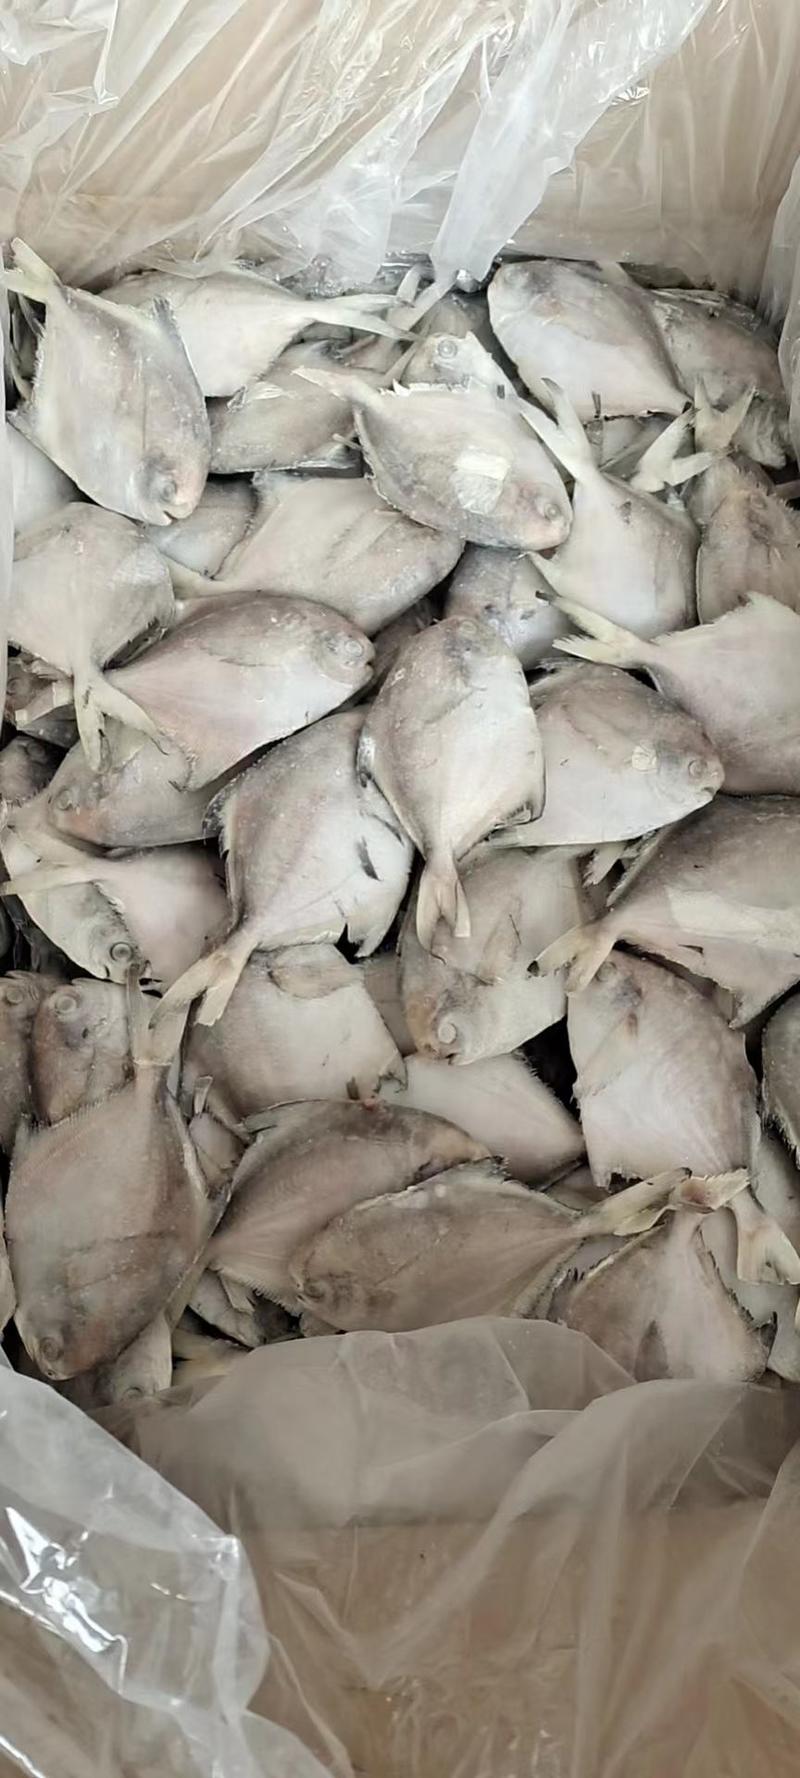 东海白鲳鱼200件起批全国各地均可直达一吨起批